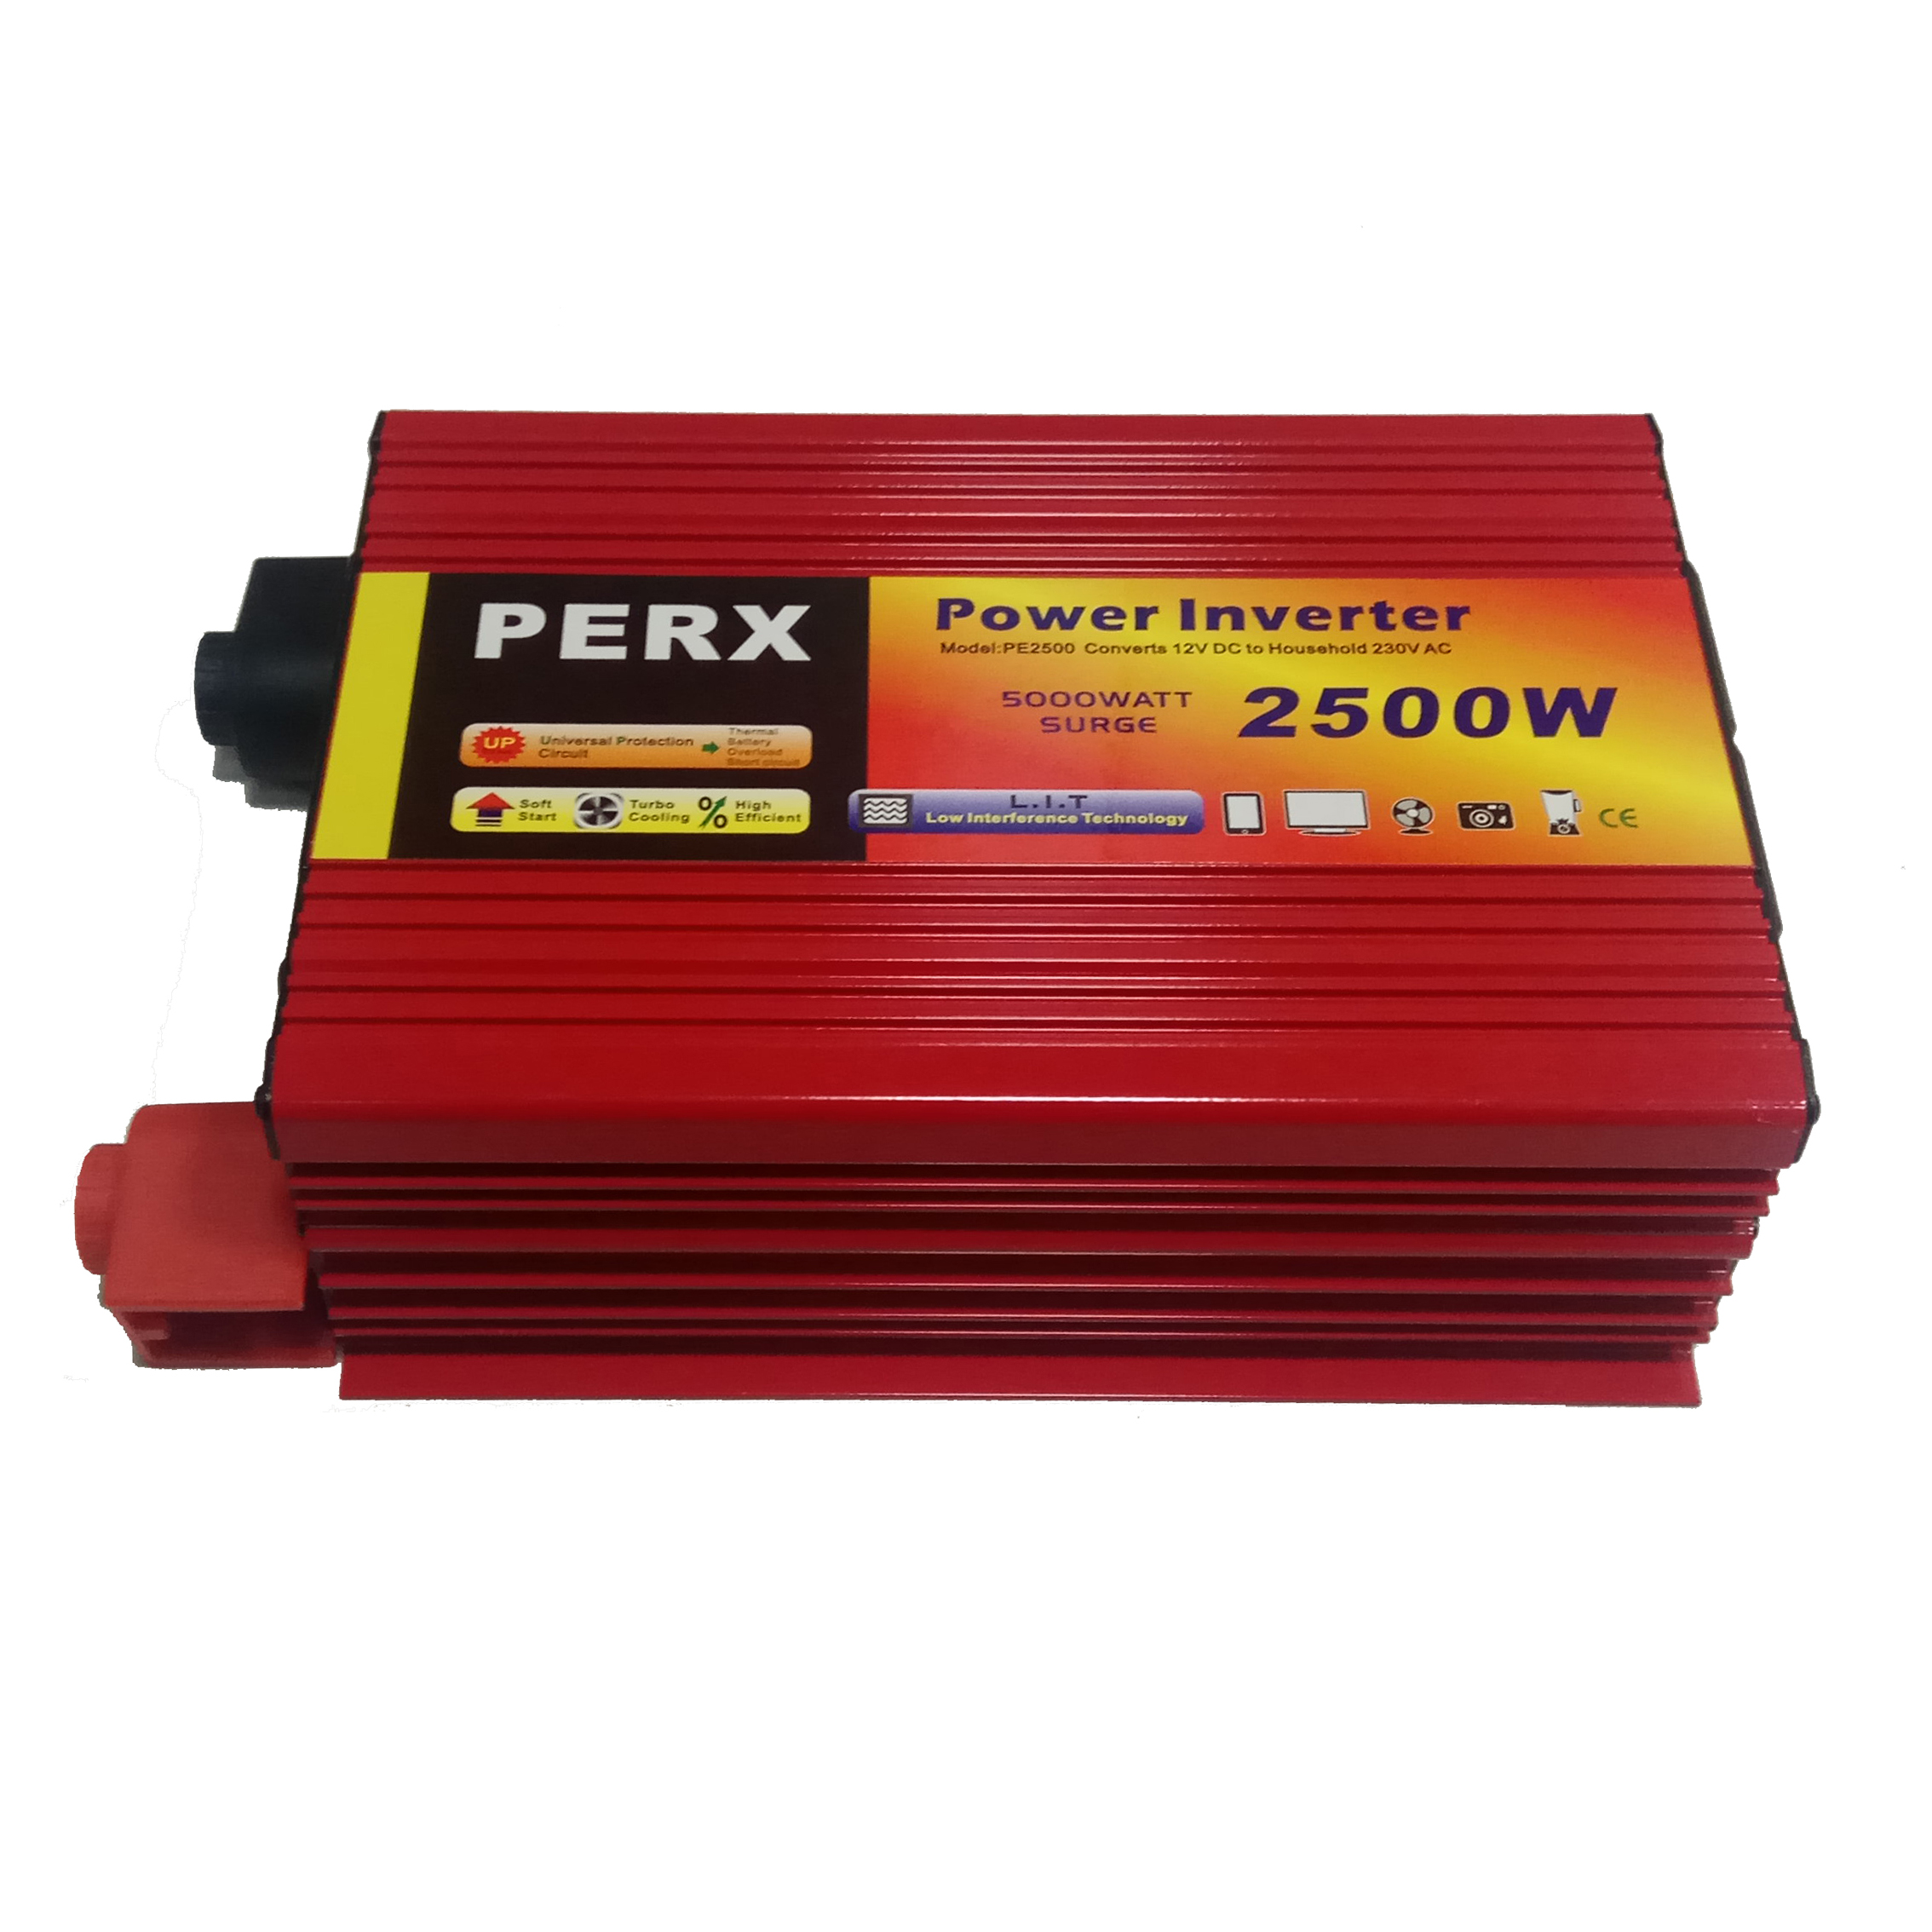 اینورتر پرکس مدل PE 2500-12 ظرفیت 2500 وات